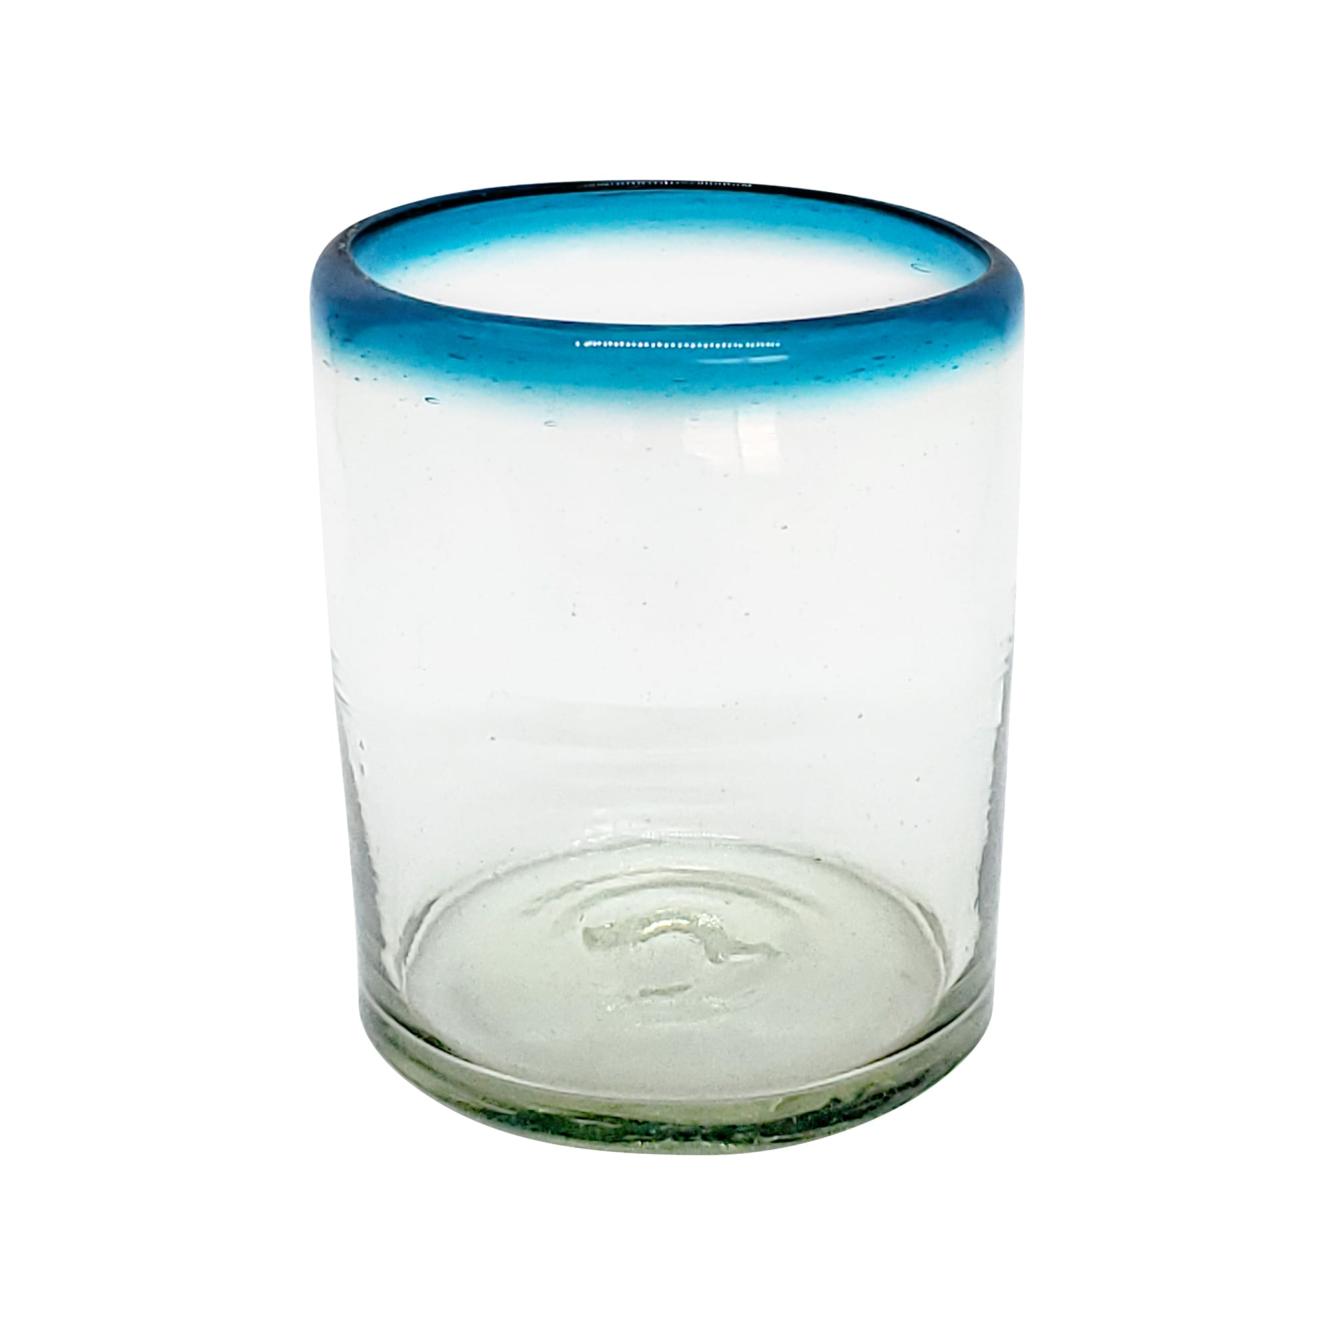 Vasos de Vidrio Soplado al Mayoreo / vasos chicos con borde azul aqua / stos vasos chicos son un gran complemento para su juego de jarra y vasos grandes.